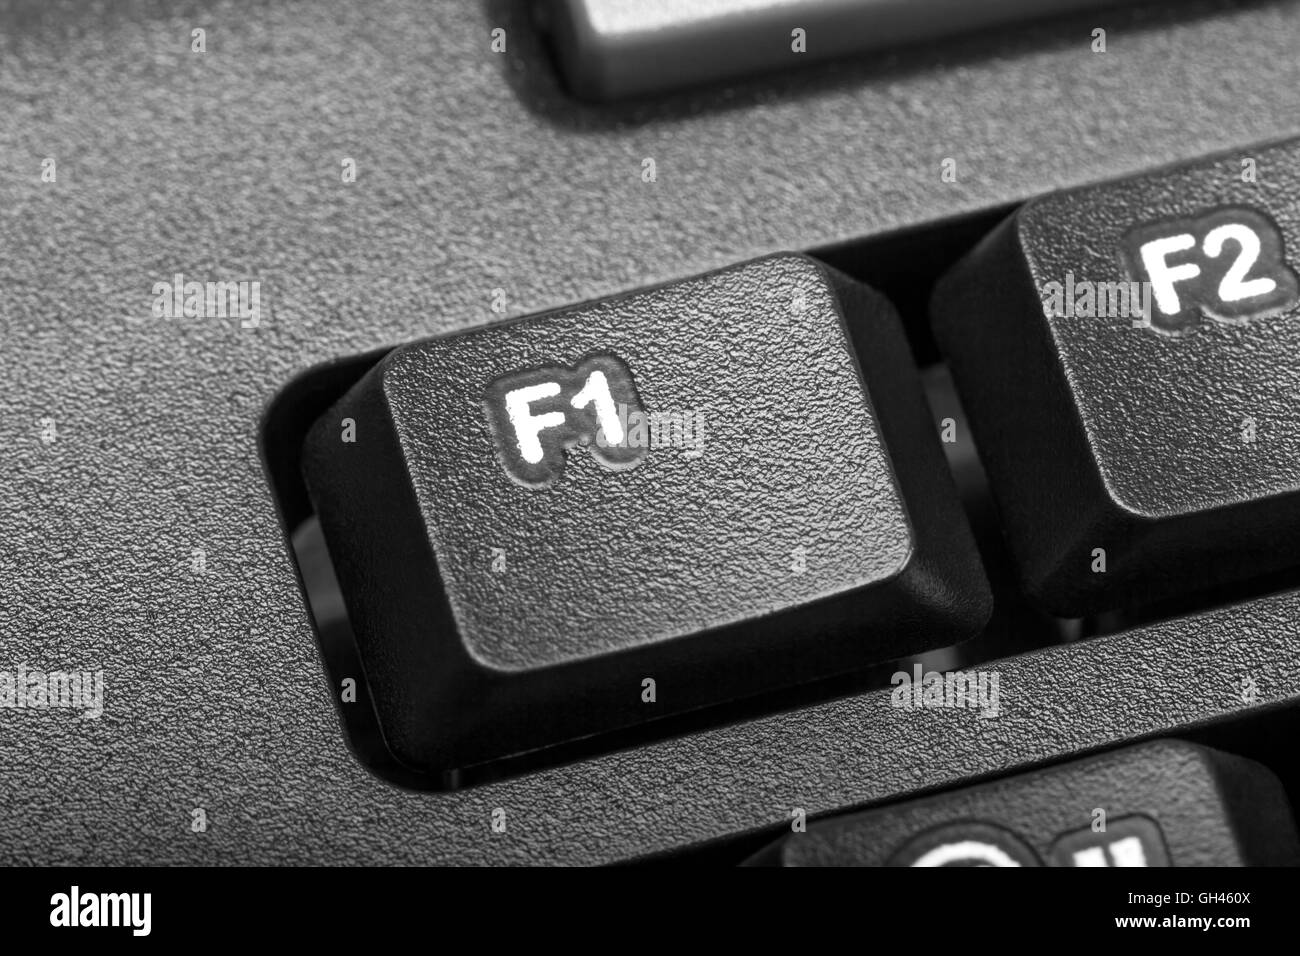 Elektronische Sammlung - Detail schwarz Computer-Tastatur mit Schlüssel f1 Stockfoto